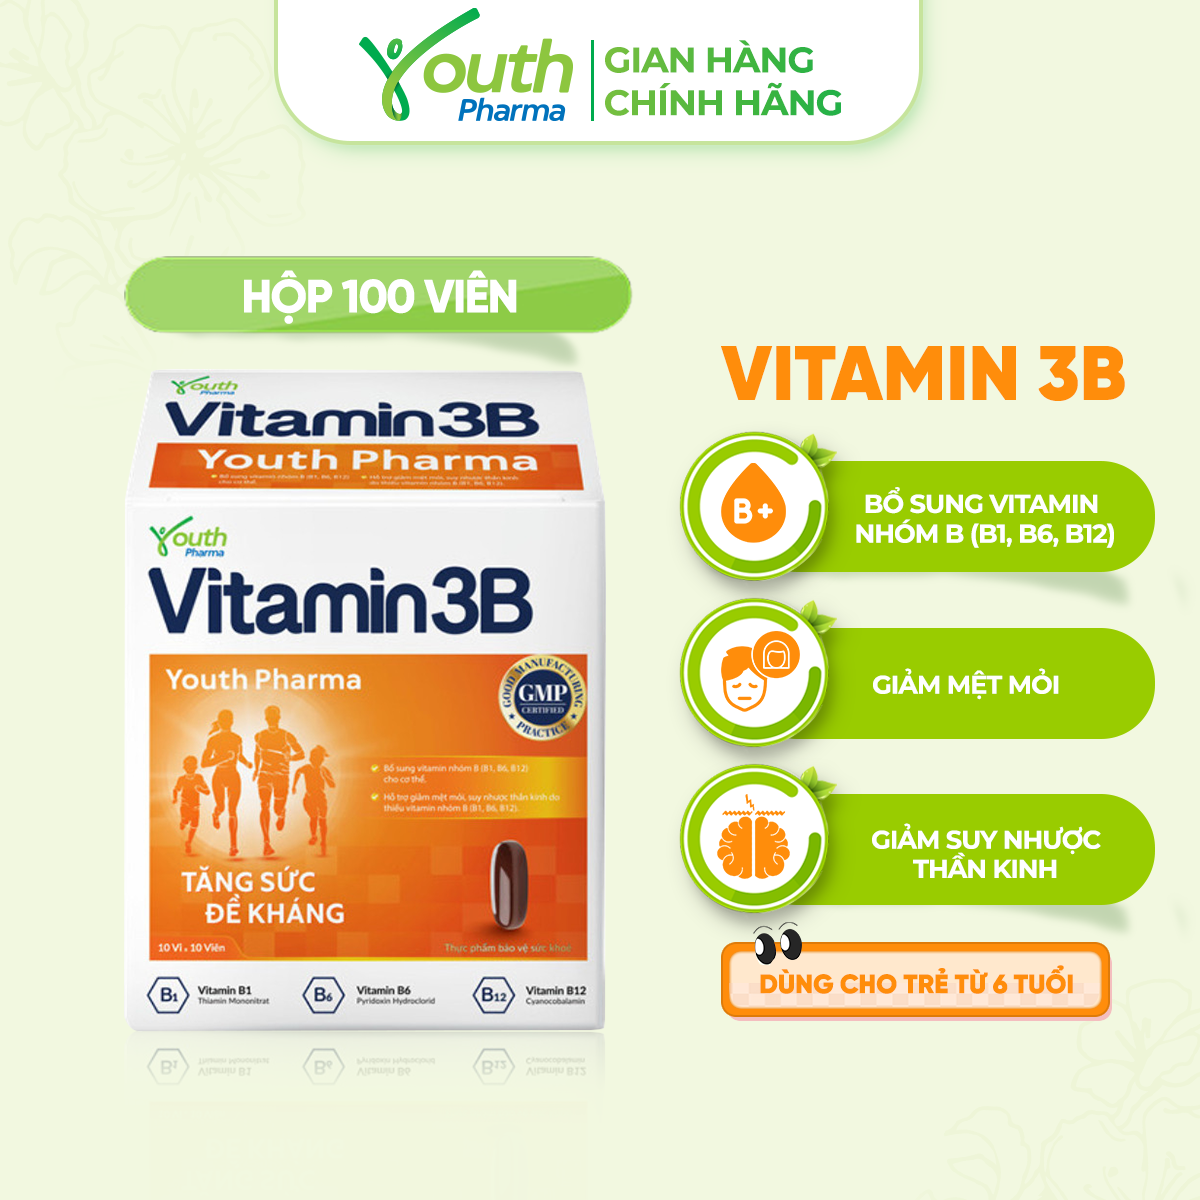 VITAMIN 3B 10X10 (Hộp 100 Viên) - Bổ sung vitamin nhóm B (B1 B6 B12) cho cơ thể. - Hỗ trợ giảm mệt mỏi suy nhược thần kinh